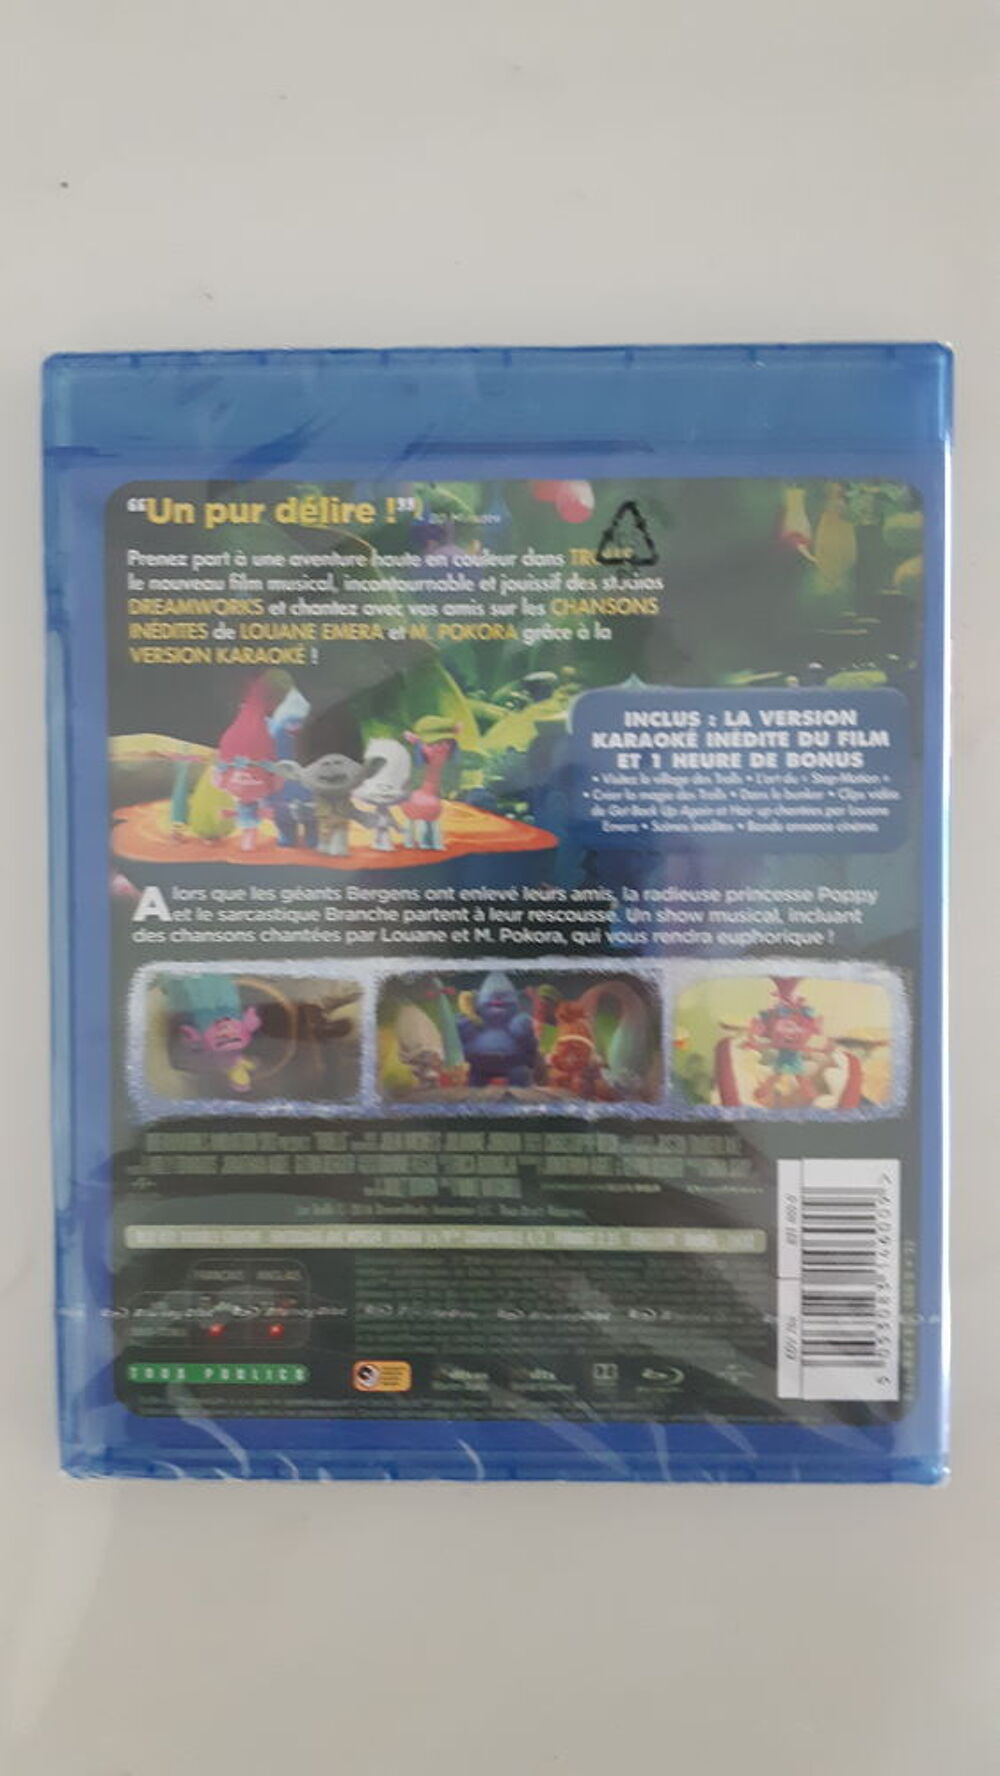 Les Trolls en Blu-ray Blu-ray Disc (BD, B-RD) DVD et blu-ray